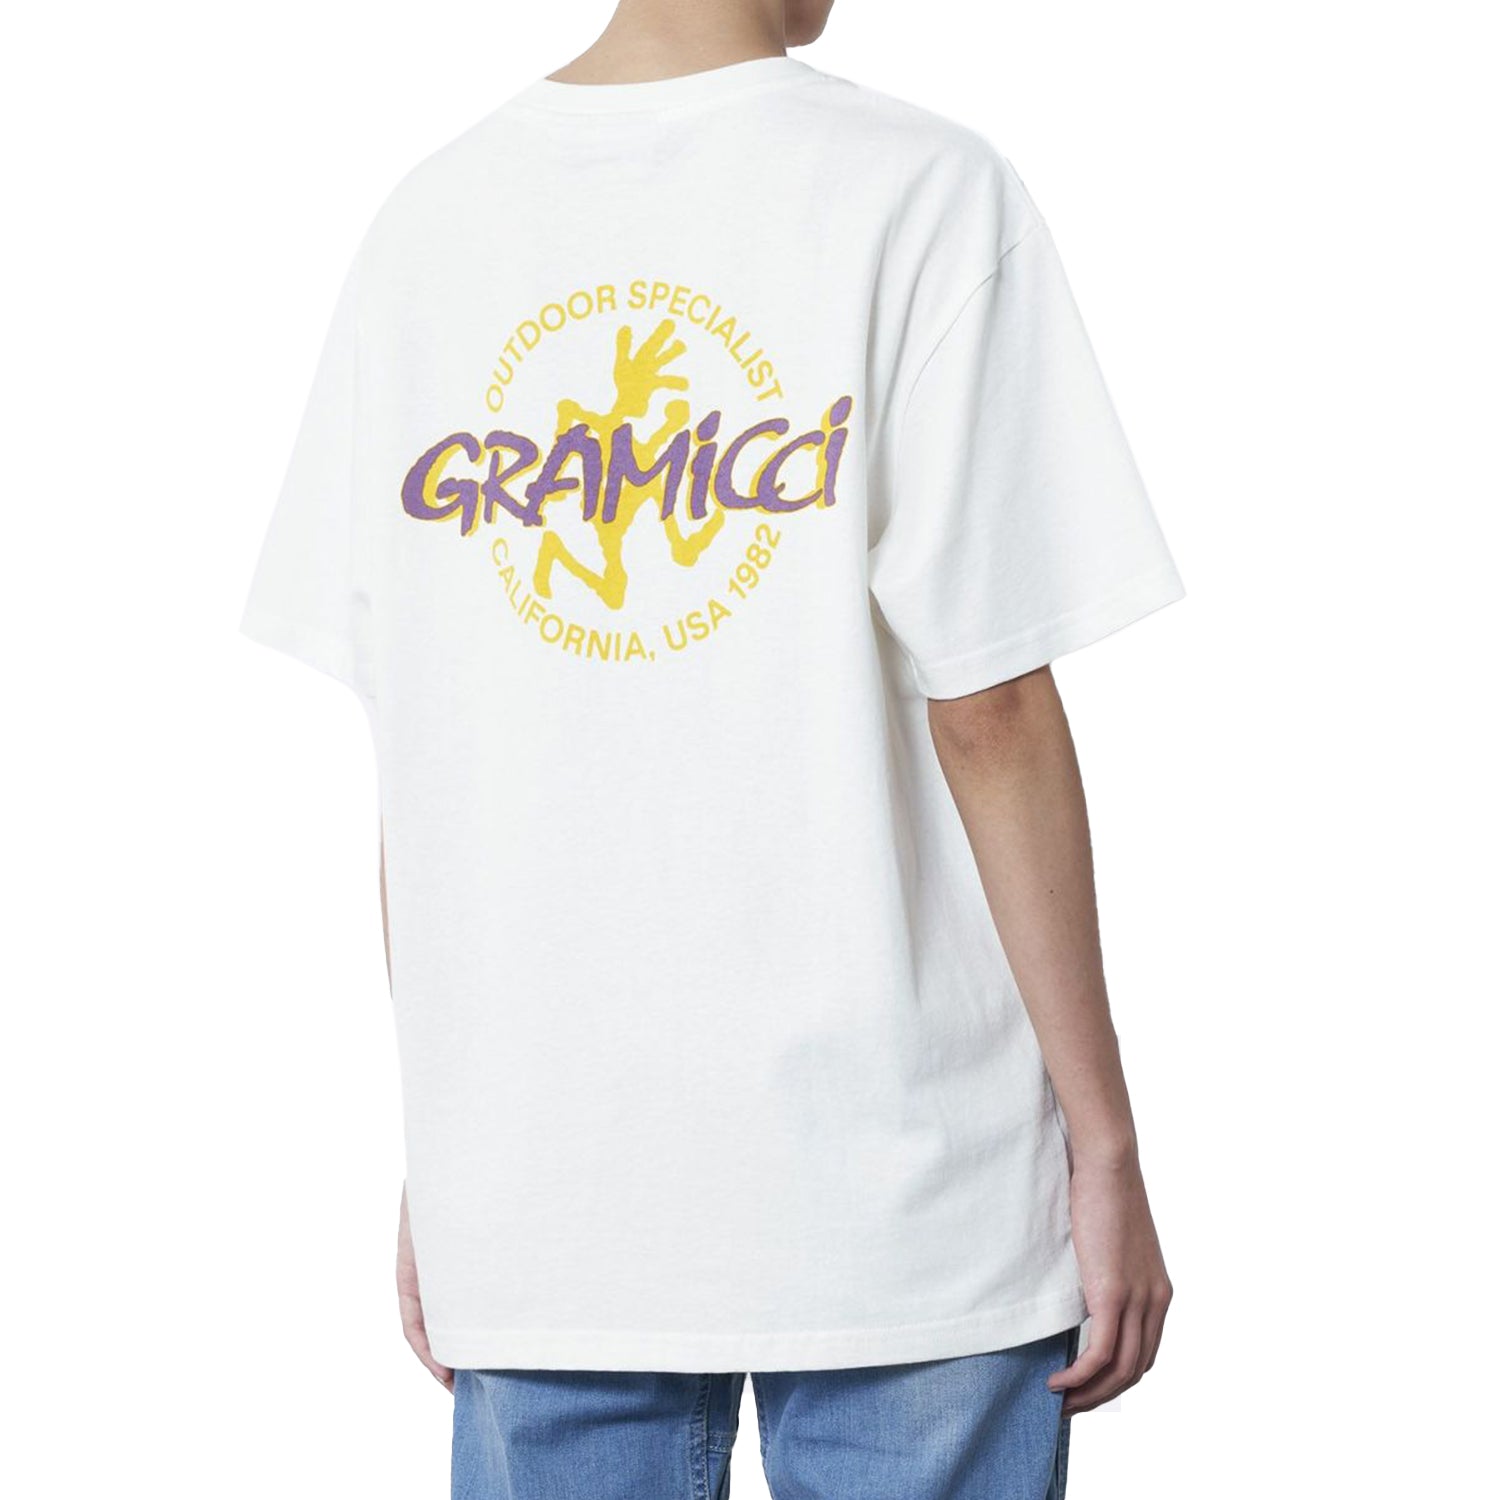 Gramicci Running Man T-Shirt - White